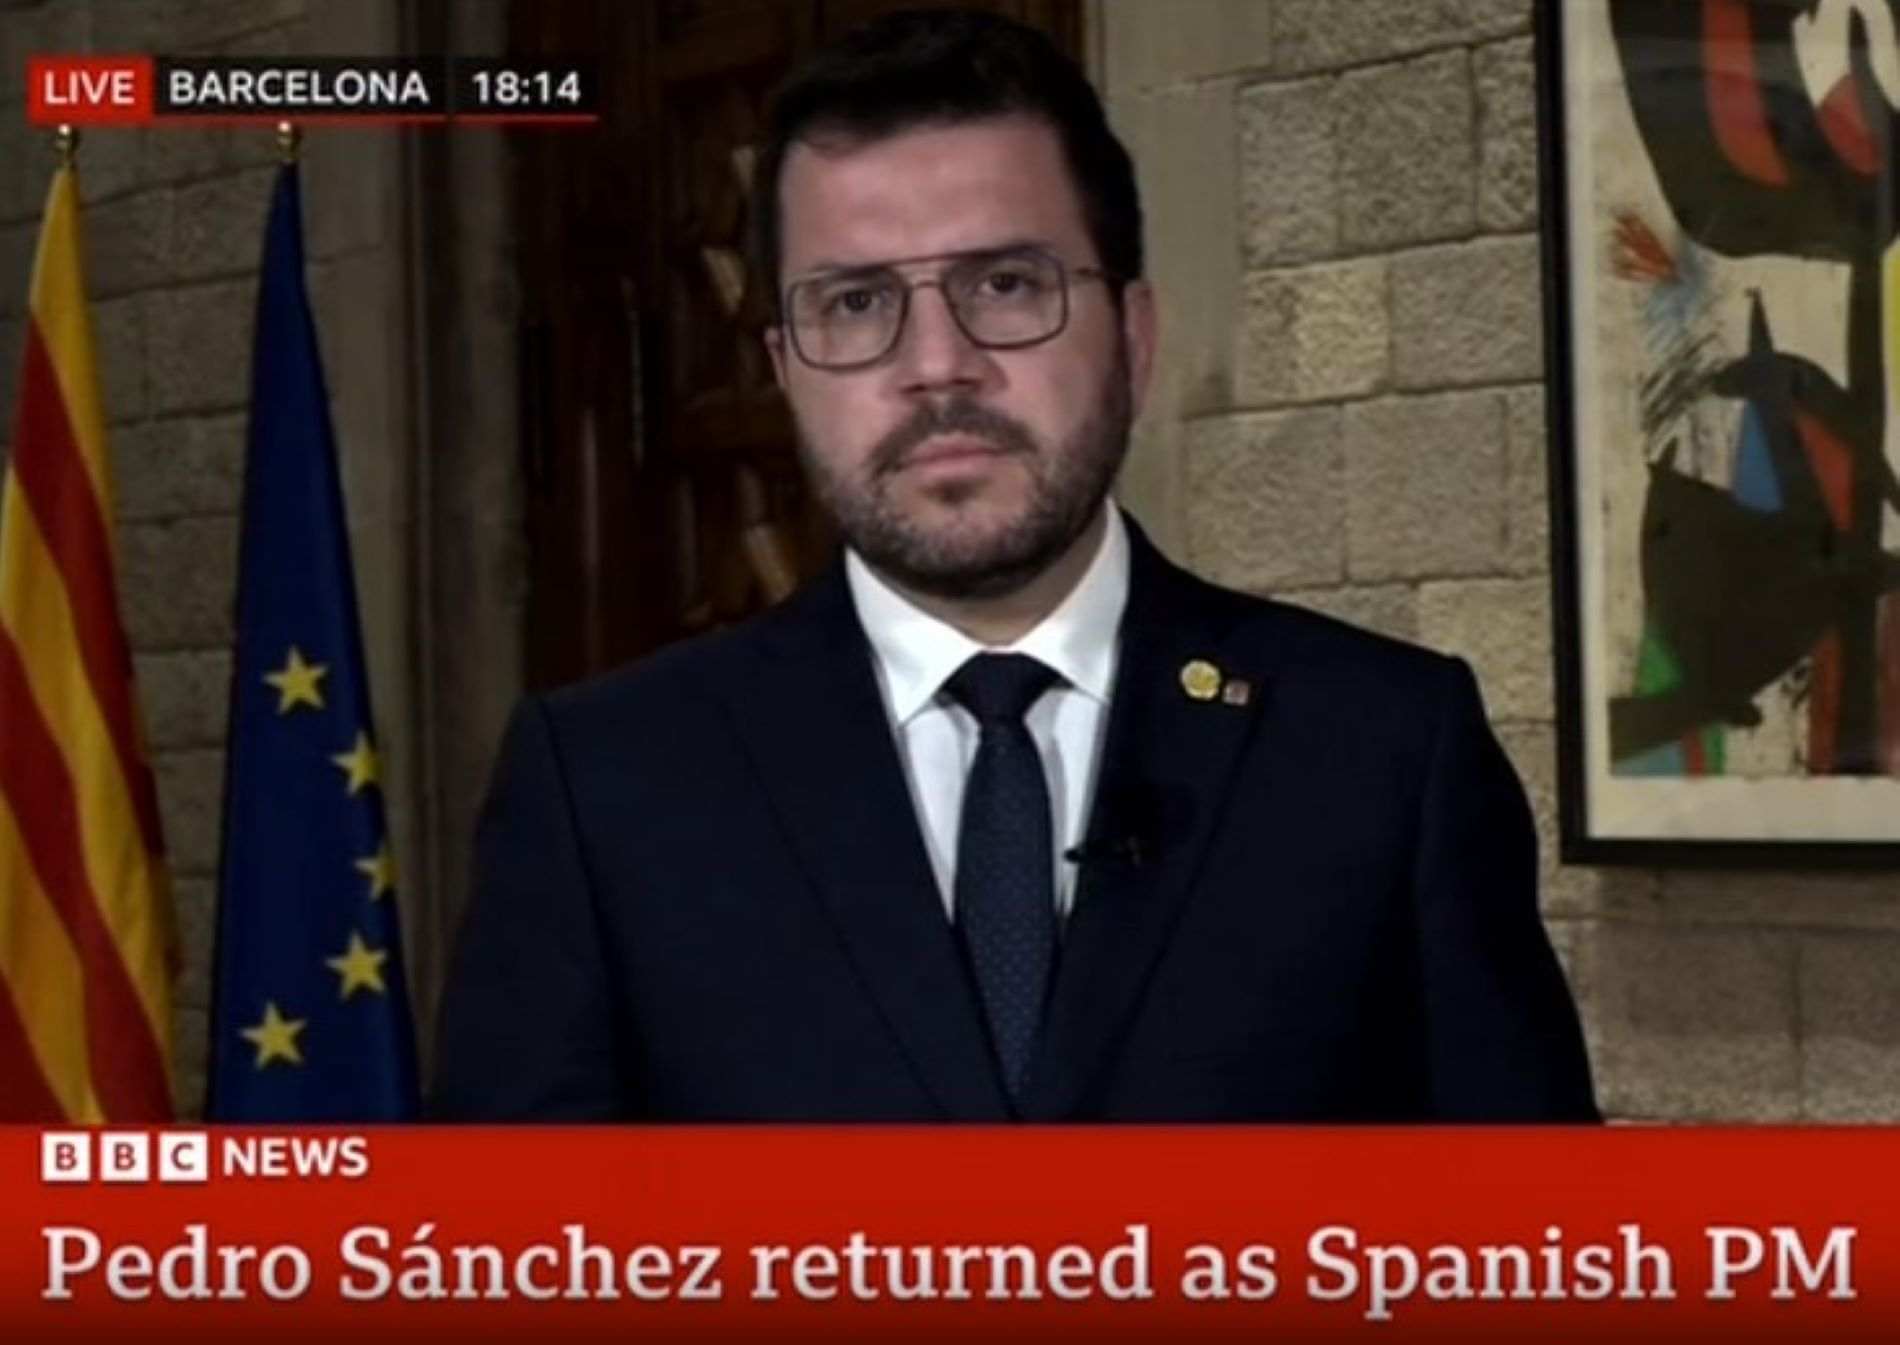 Pere Aragonès evita decir a la BBC qué pasará si Pedro Sánchez no cumple con los acuerdos